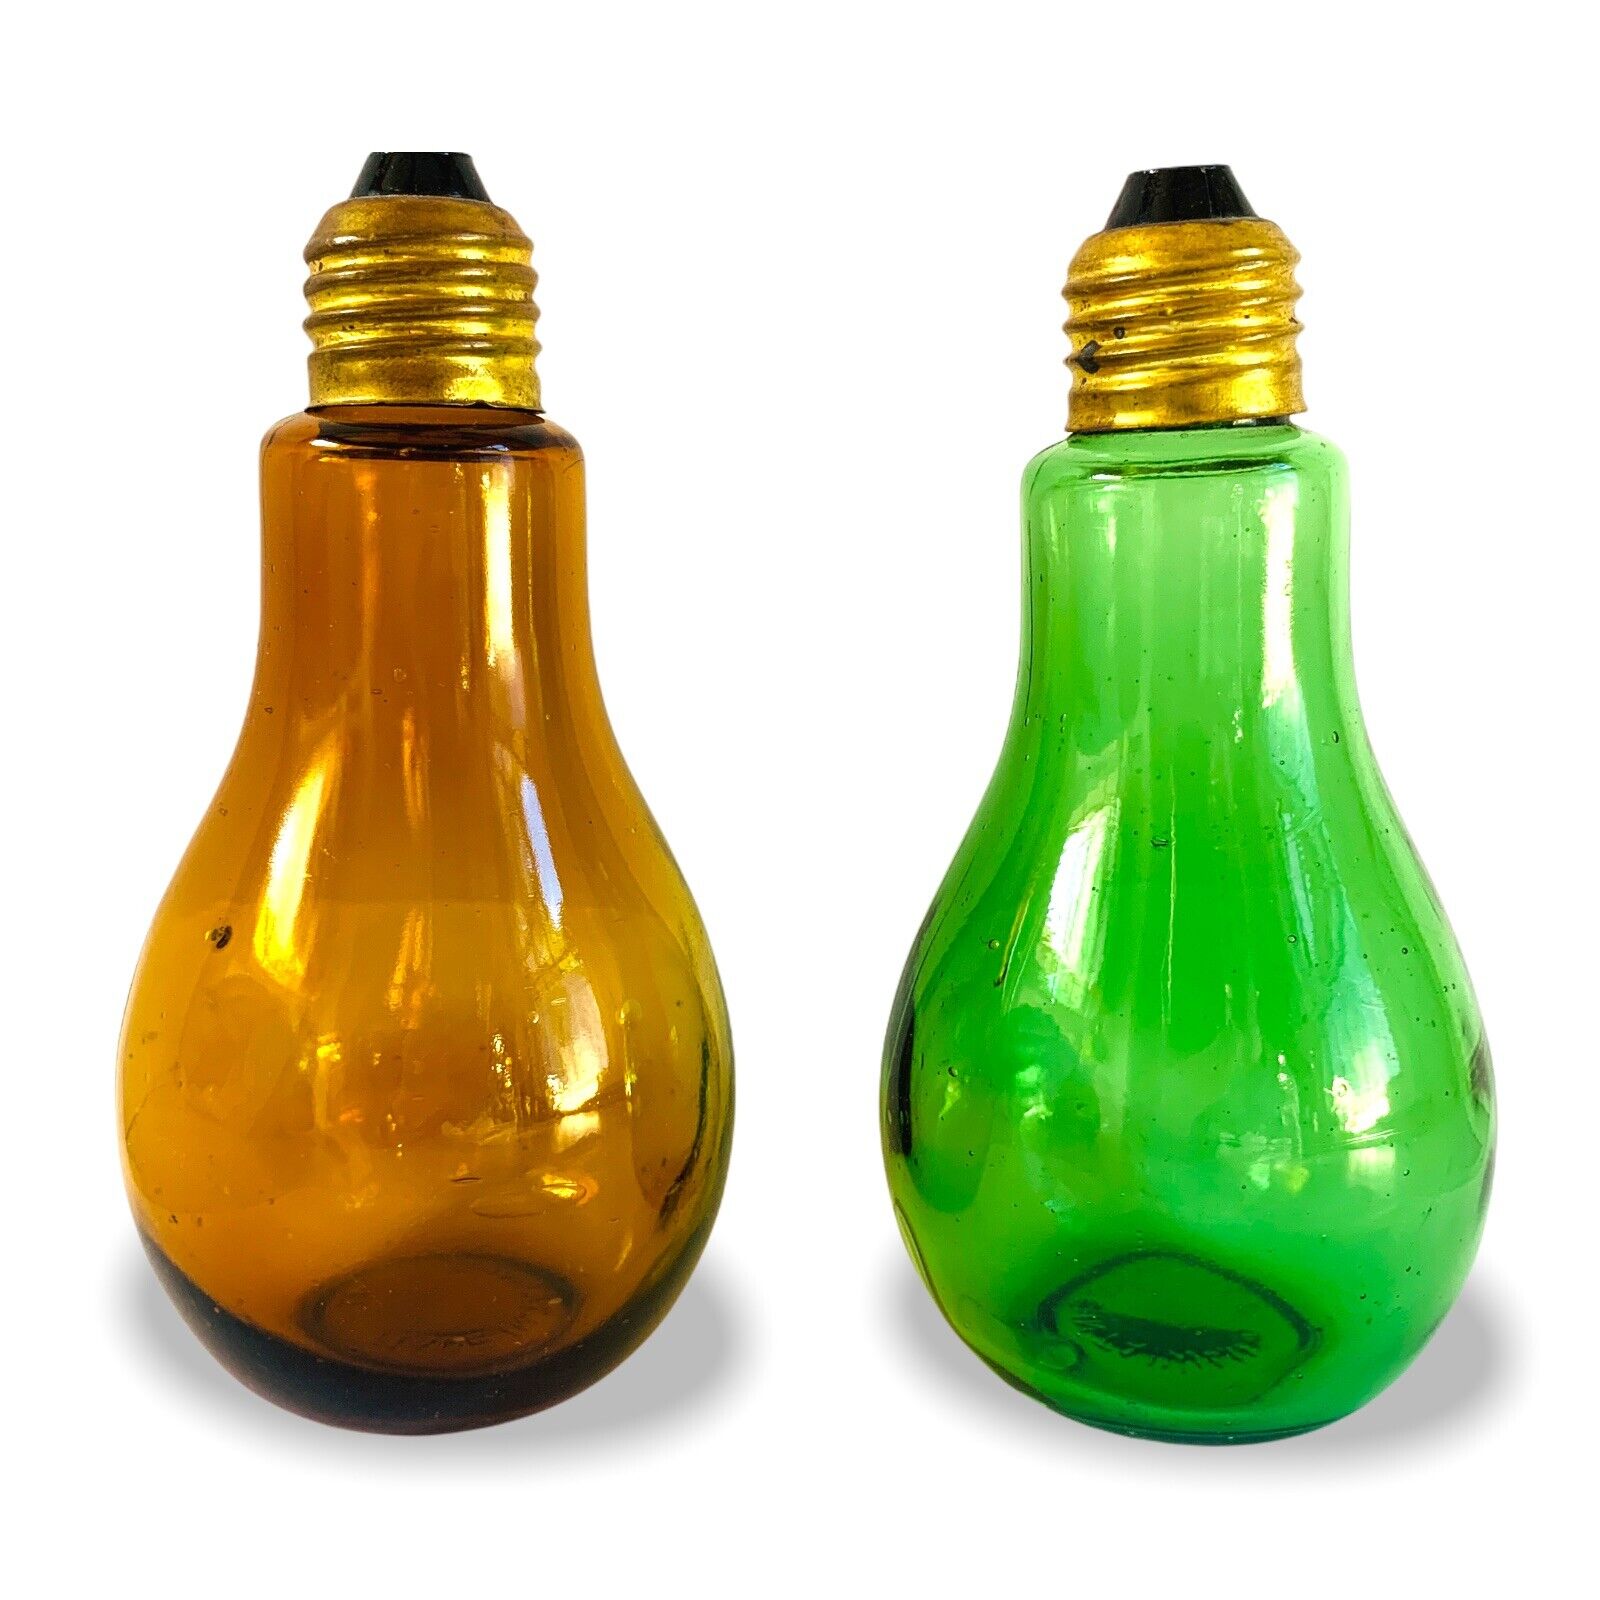 VTG 1960s POP ART Glass Lightbulb Salt & Pepper Shakers S & P Taiwan